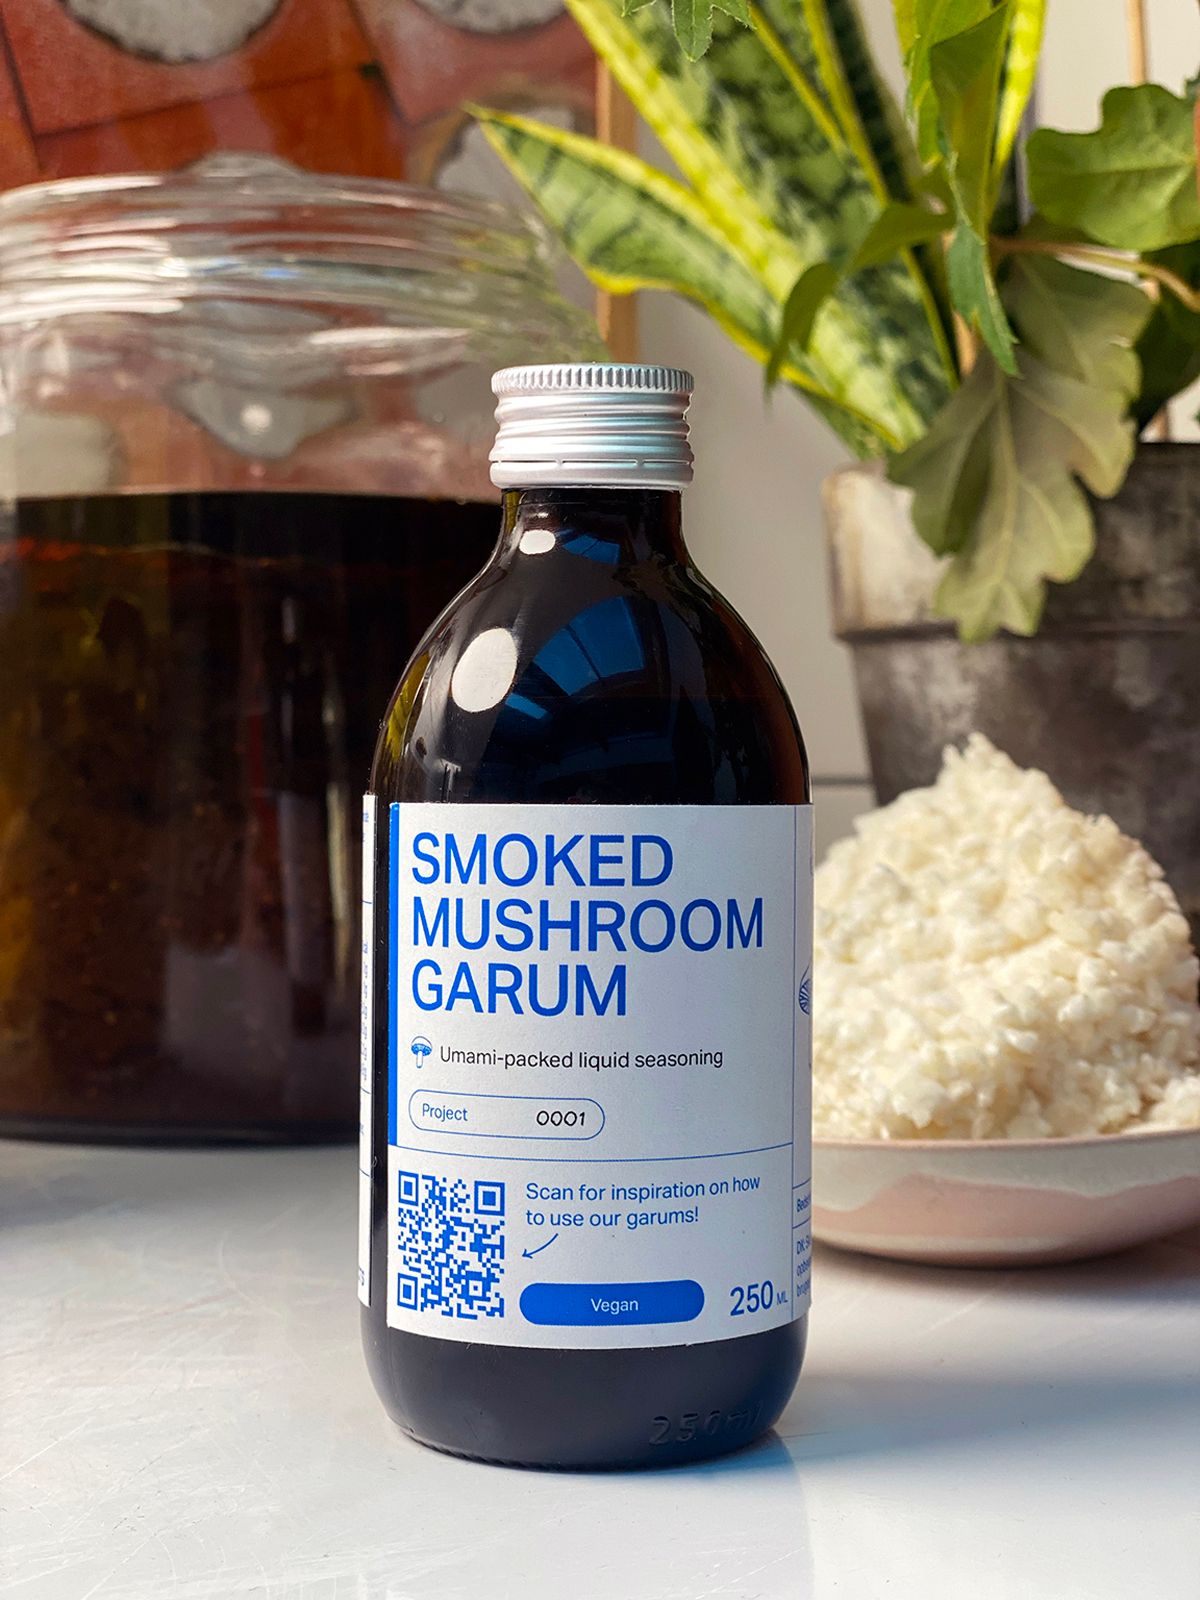 Smoked Mushroom Garum Noma bringt das erste Produkt für daheim Essen